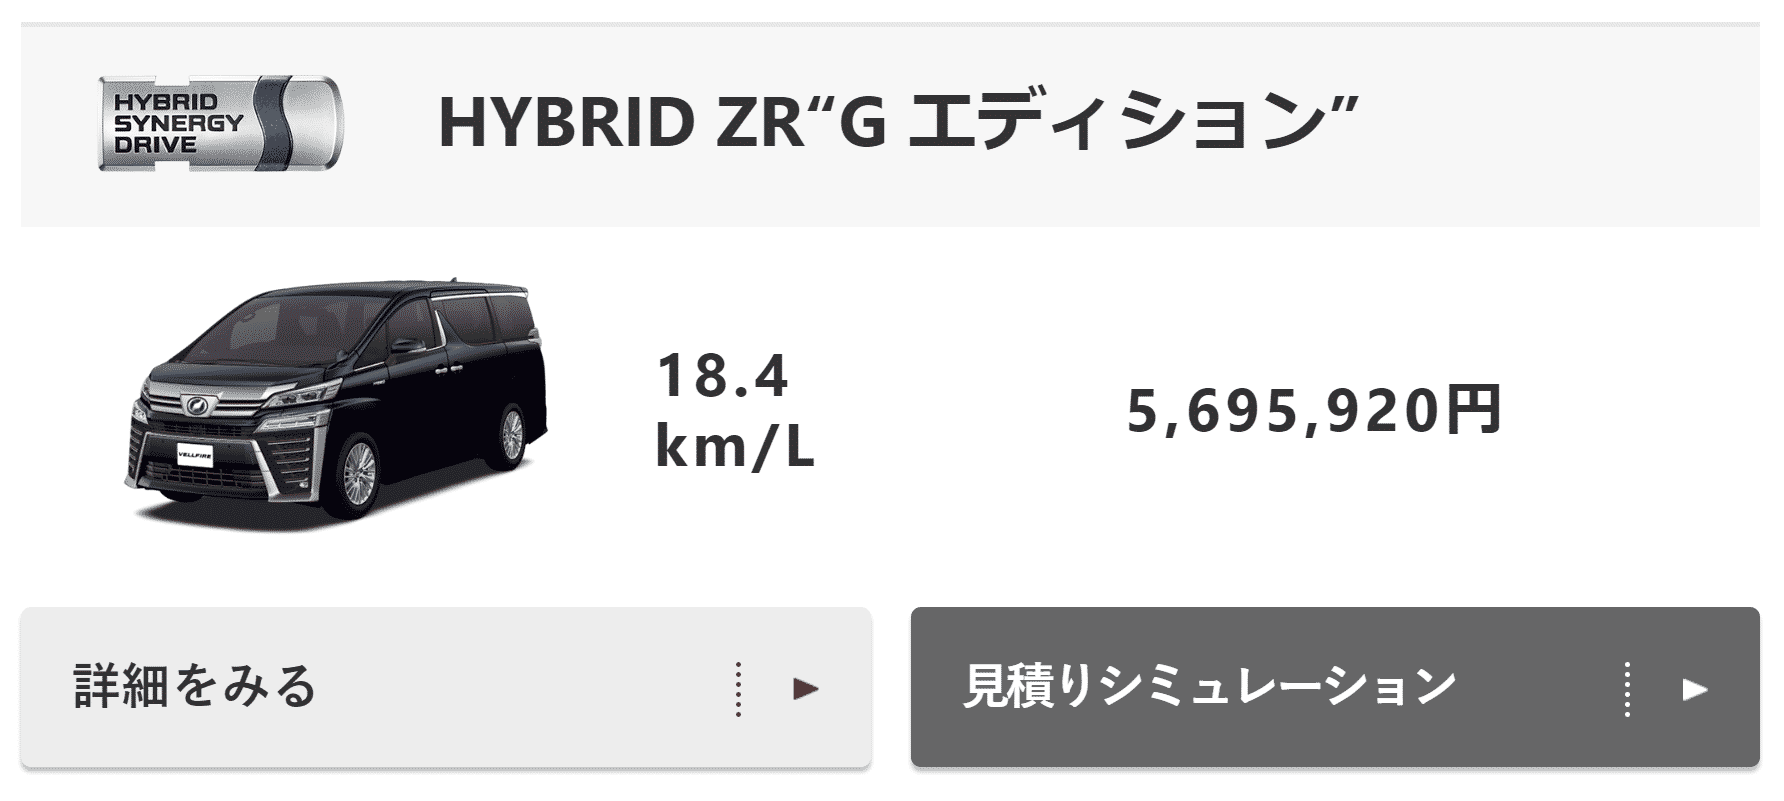 「HYBRID ZR“G エディション”」の画像